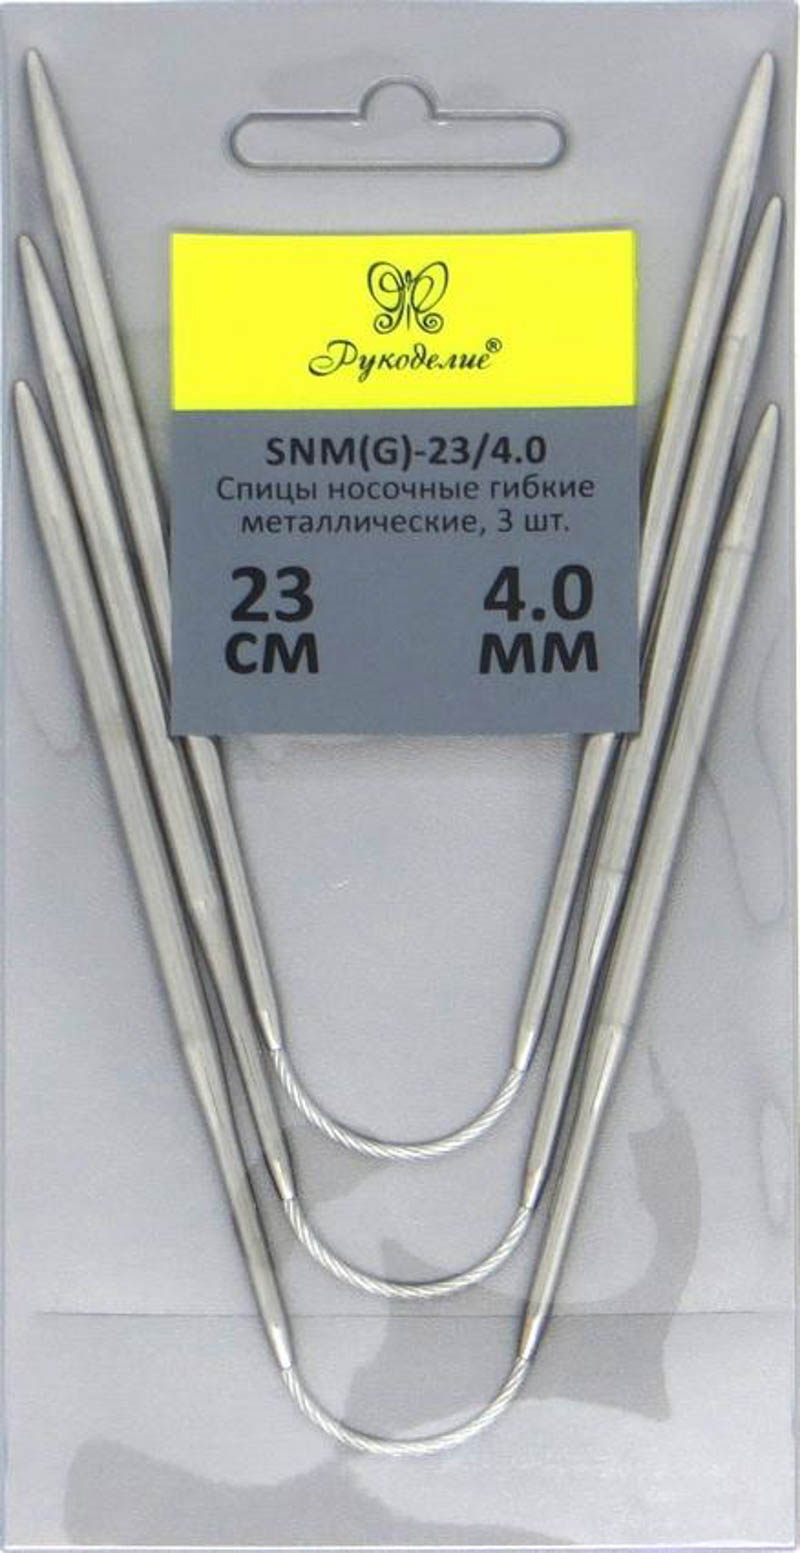 Спицы "Рукоделие" SNM(G)-23/4.0 носочные гибкие металл 4,0мм, 23см (3шт.)на металлическом тросике